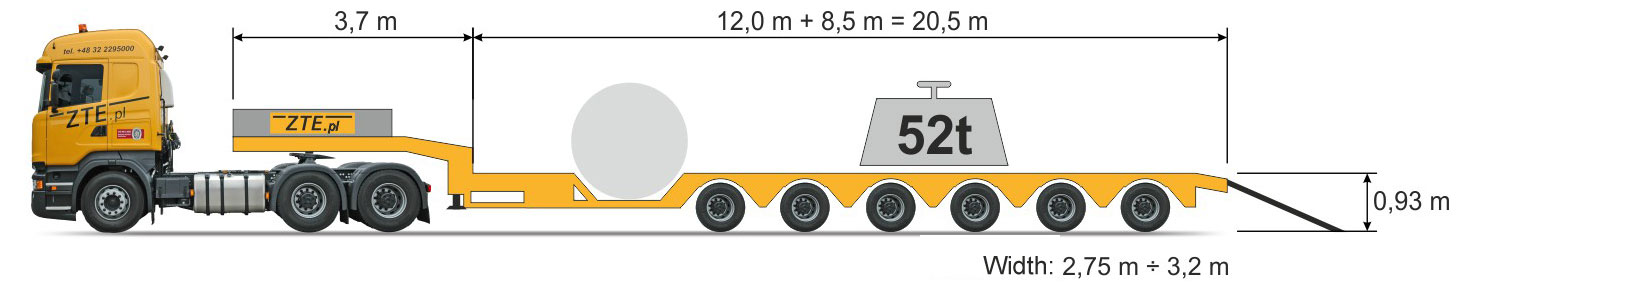 6-axle Semi type semi-trailer